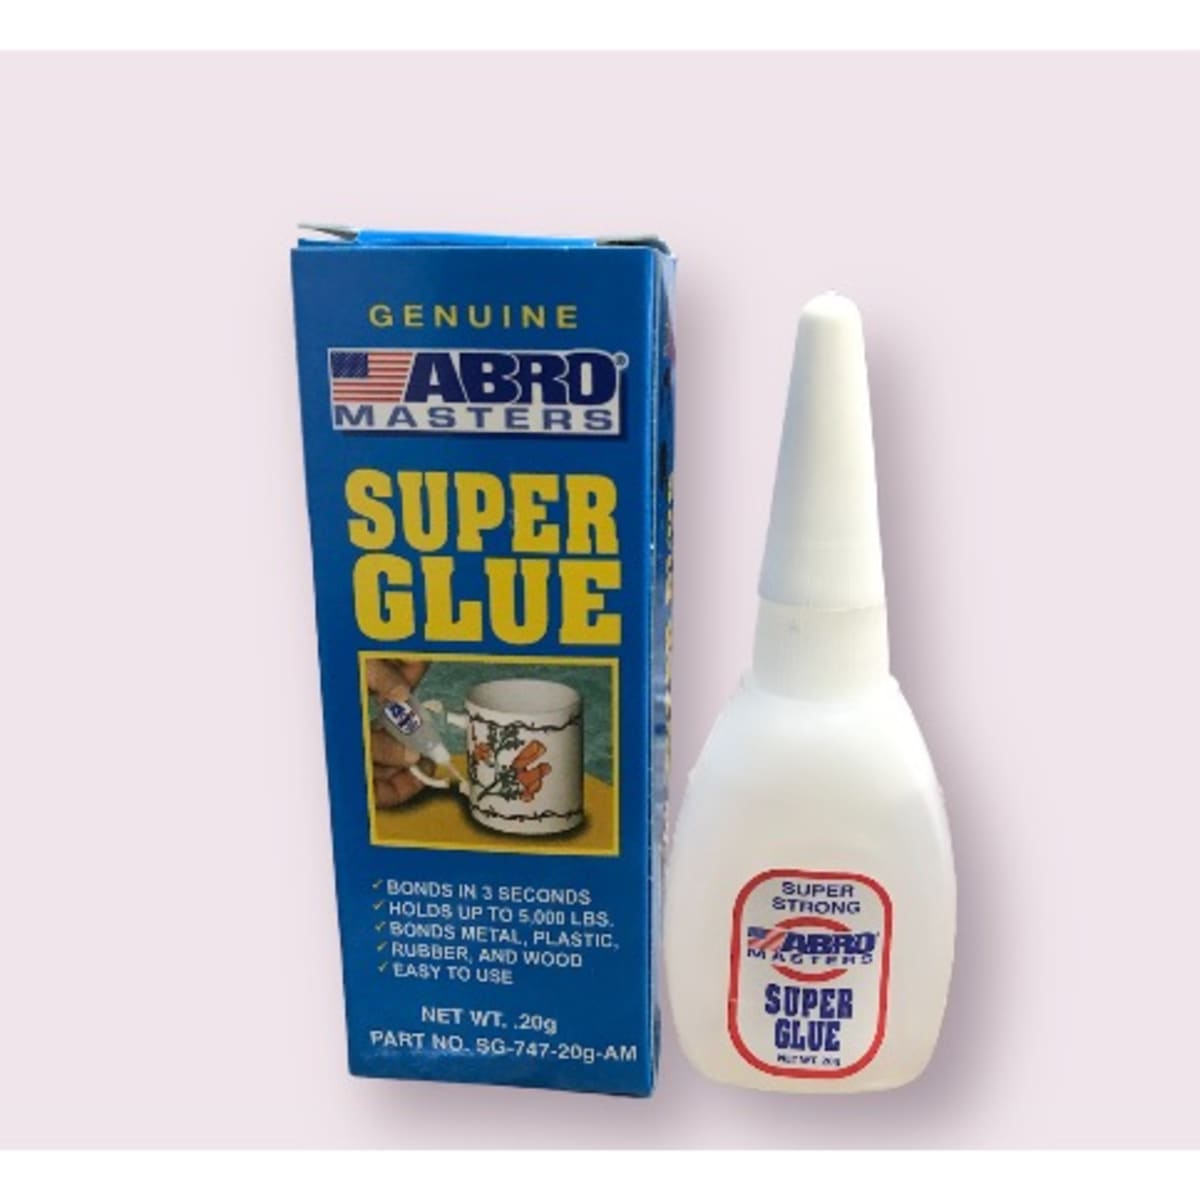 Super Glue - ABRO